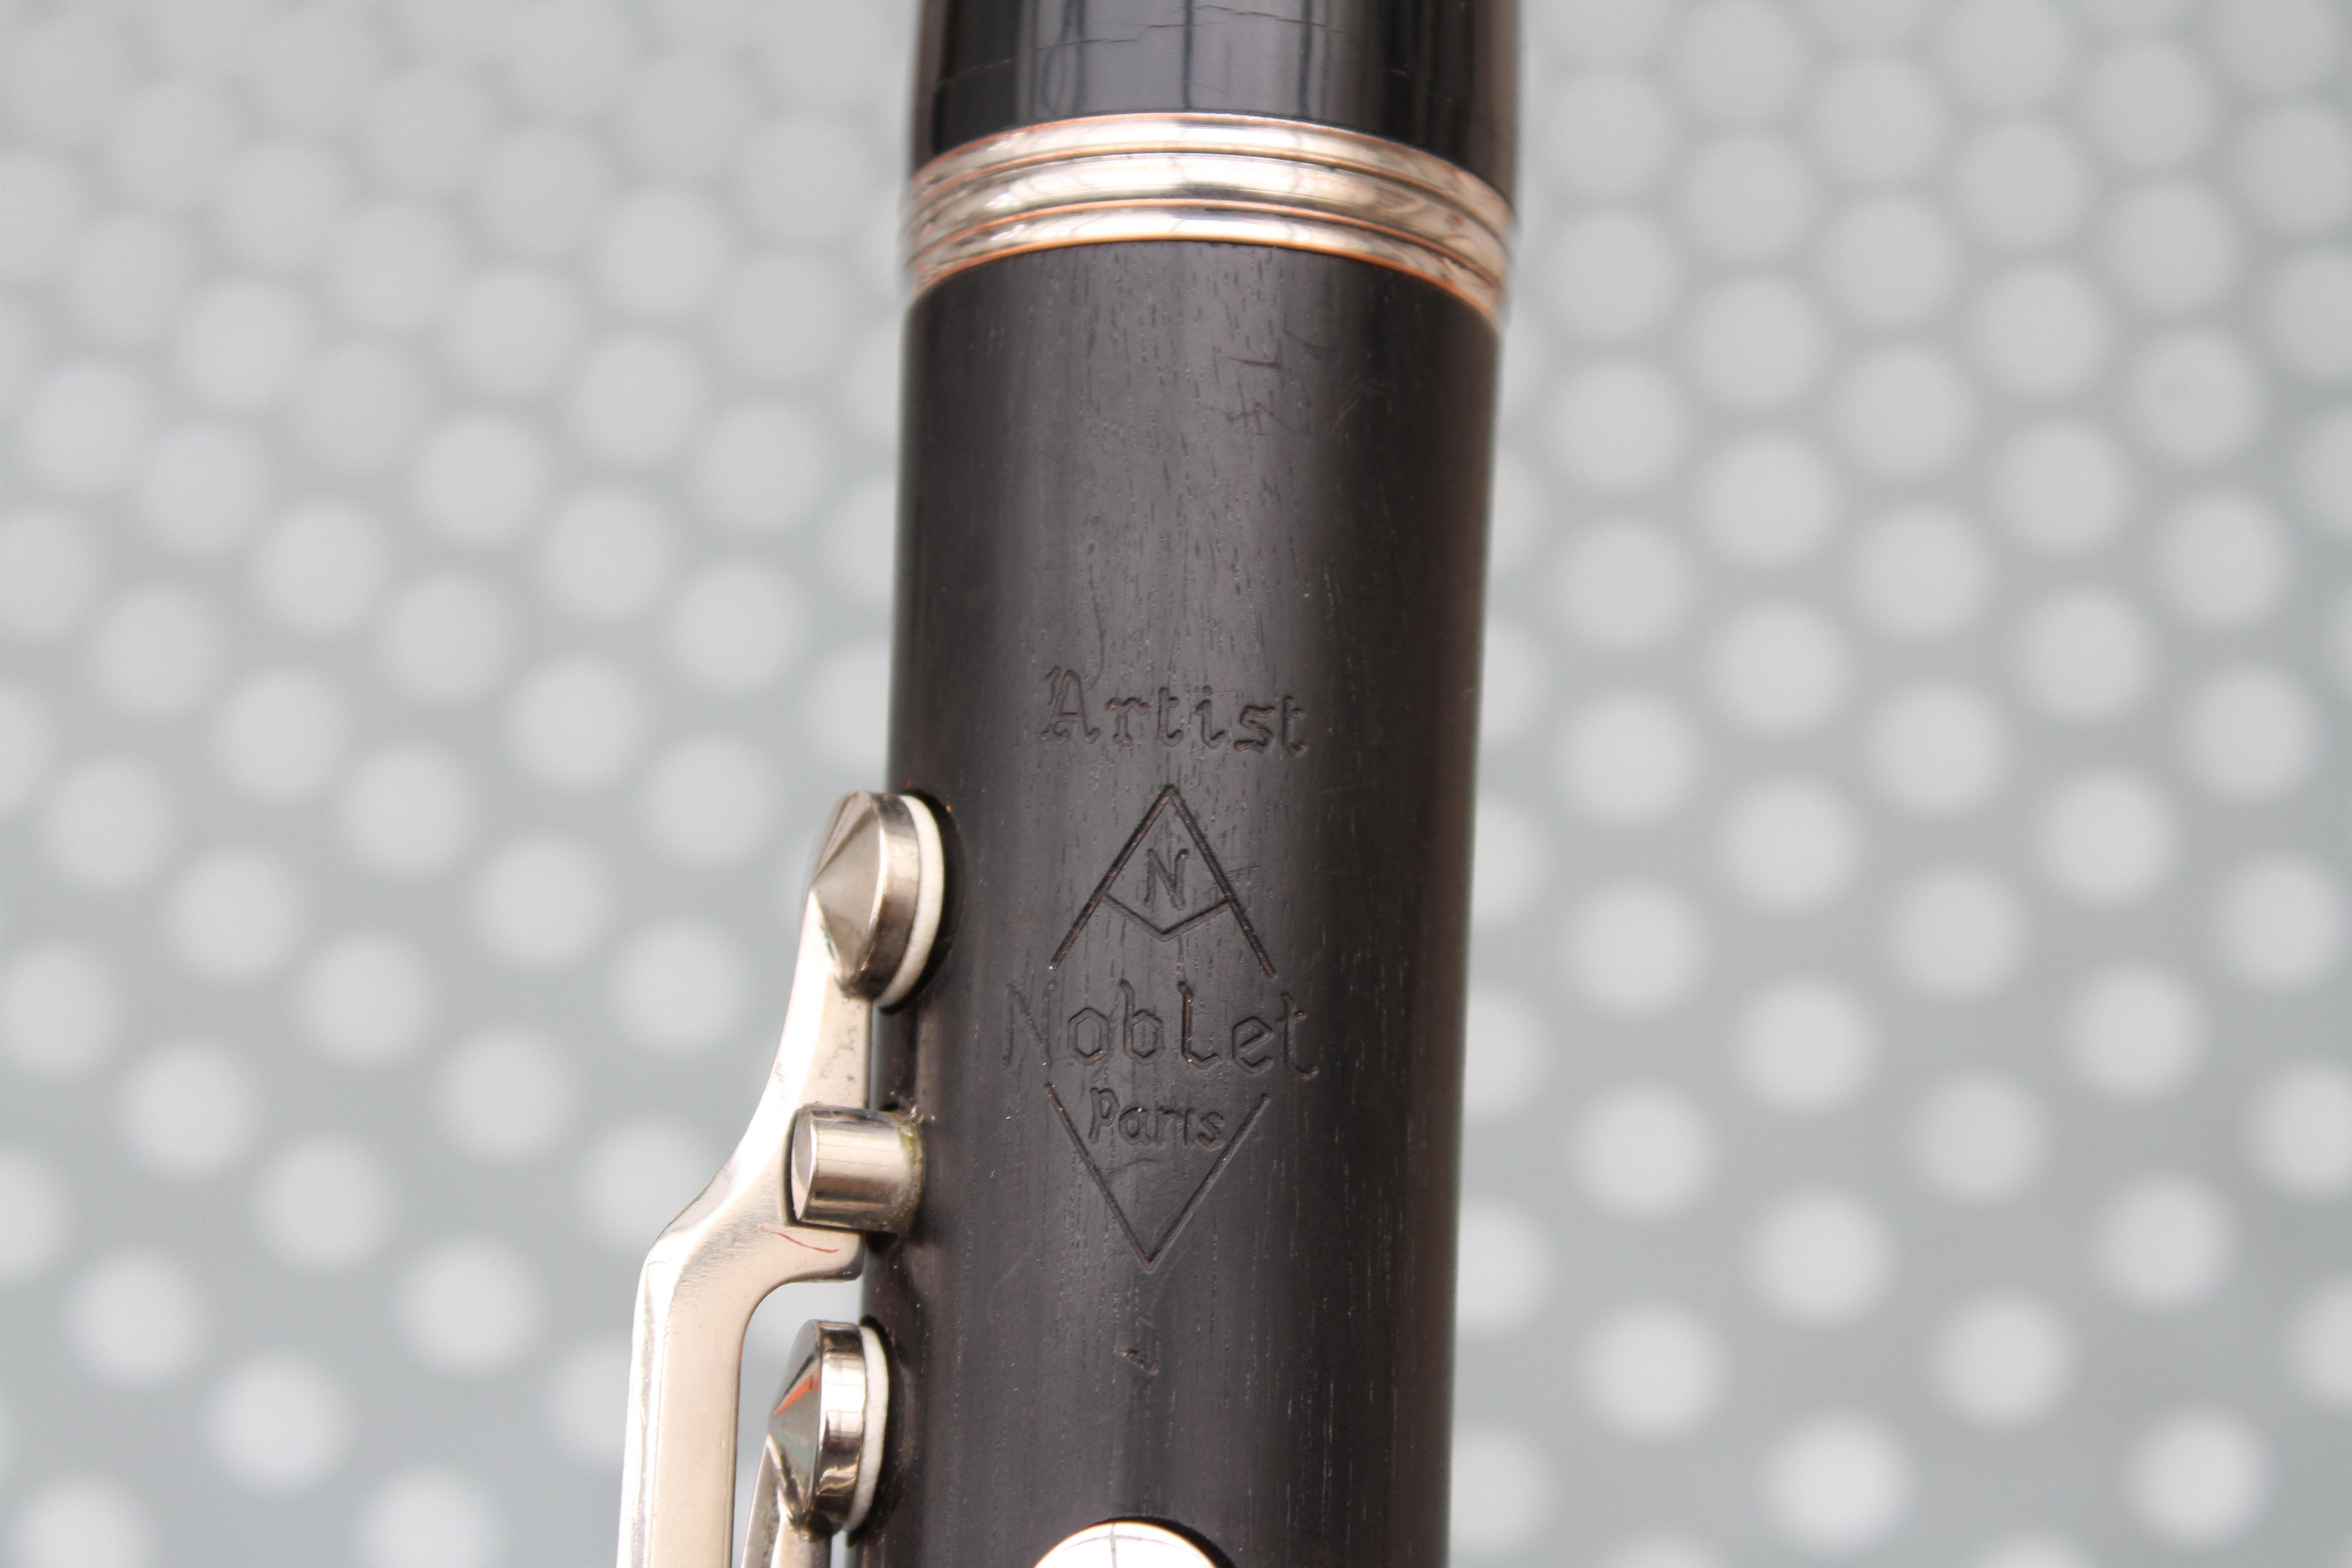 27 noblet paris clarinet